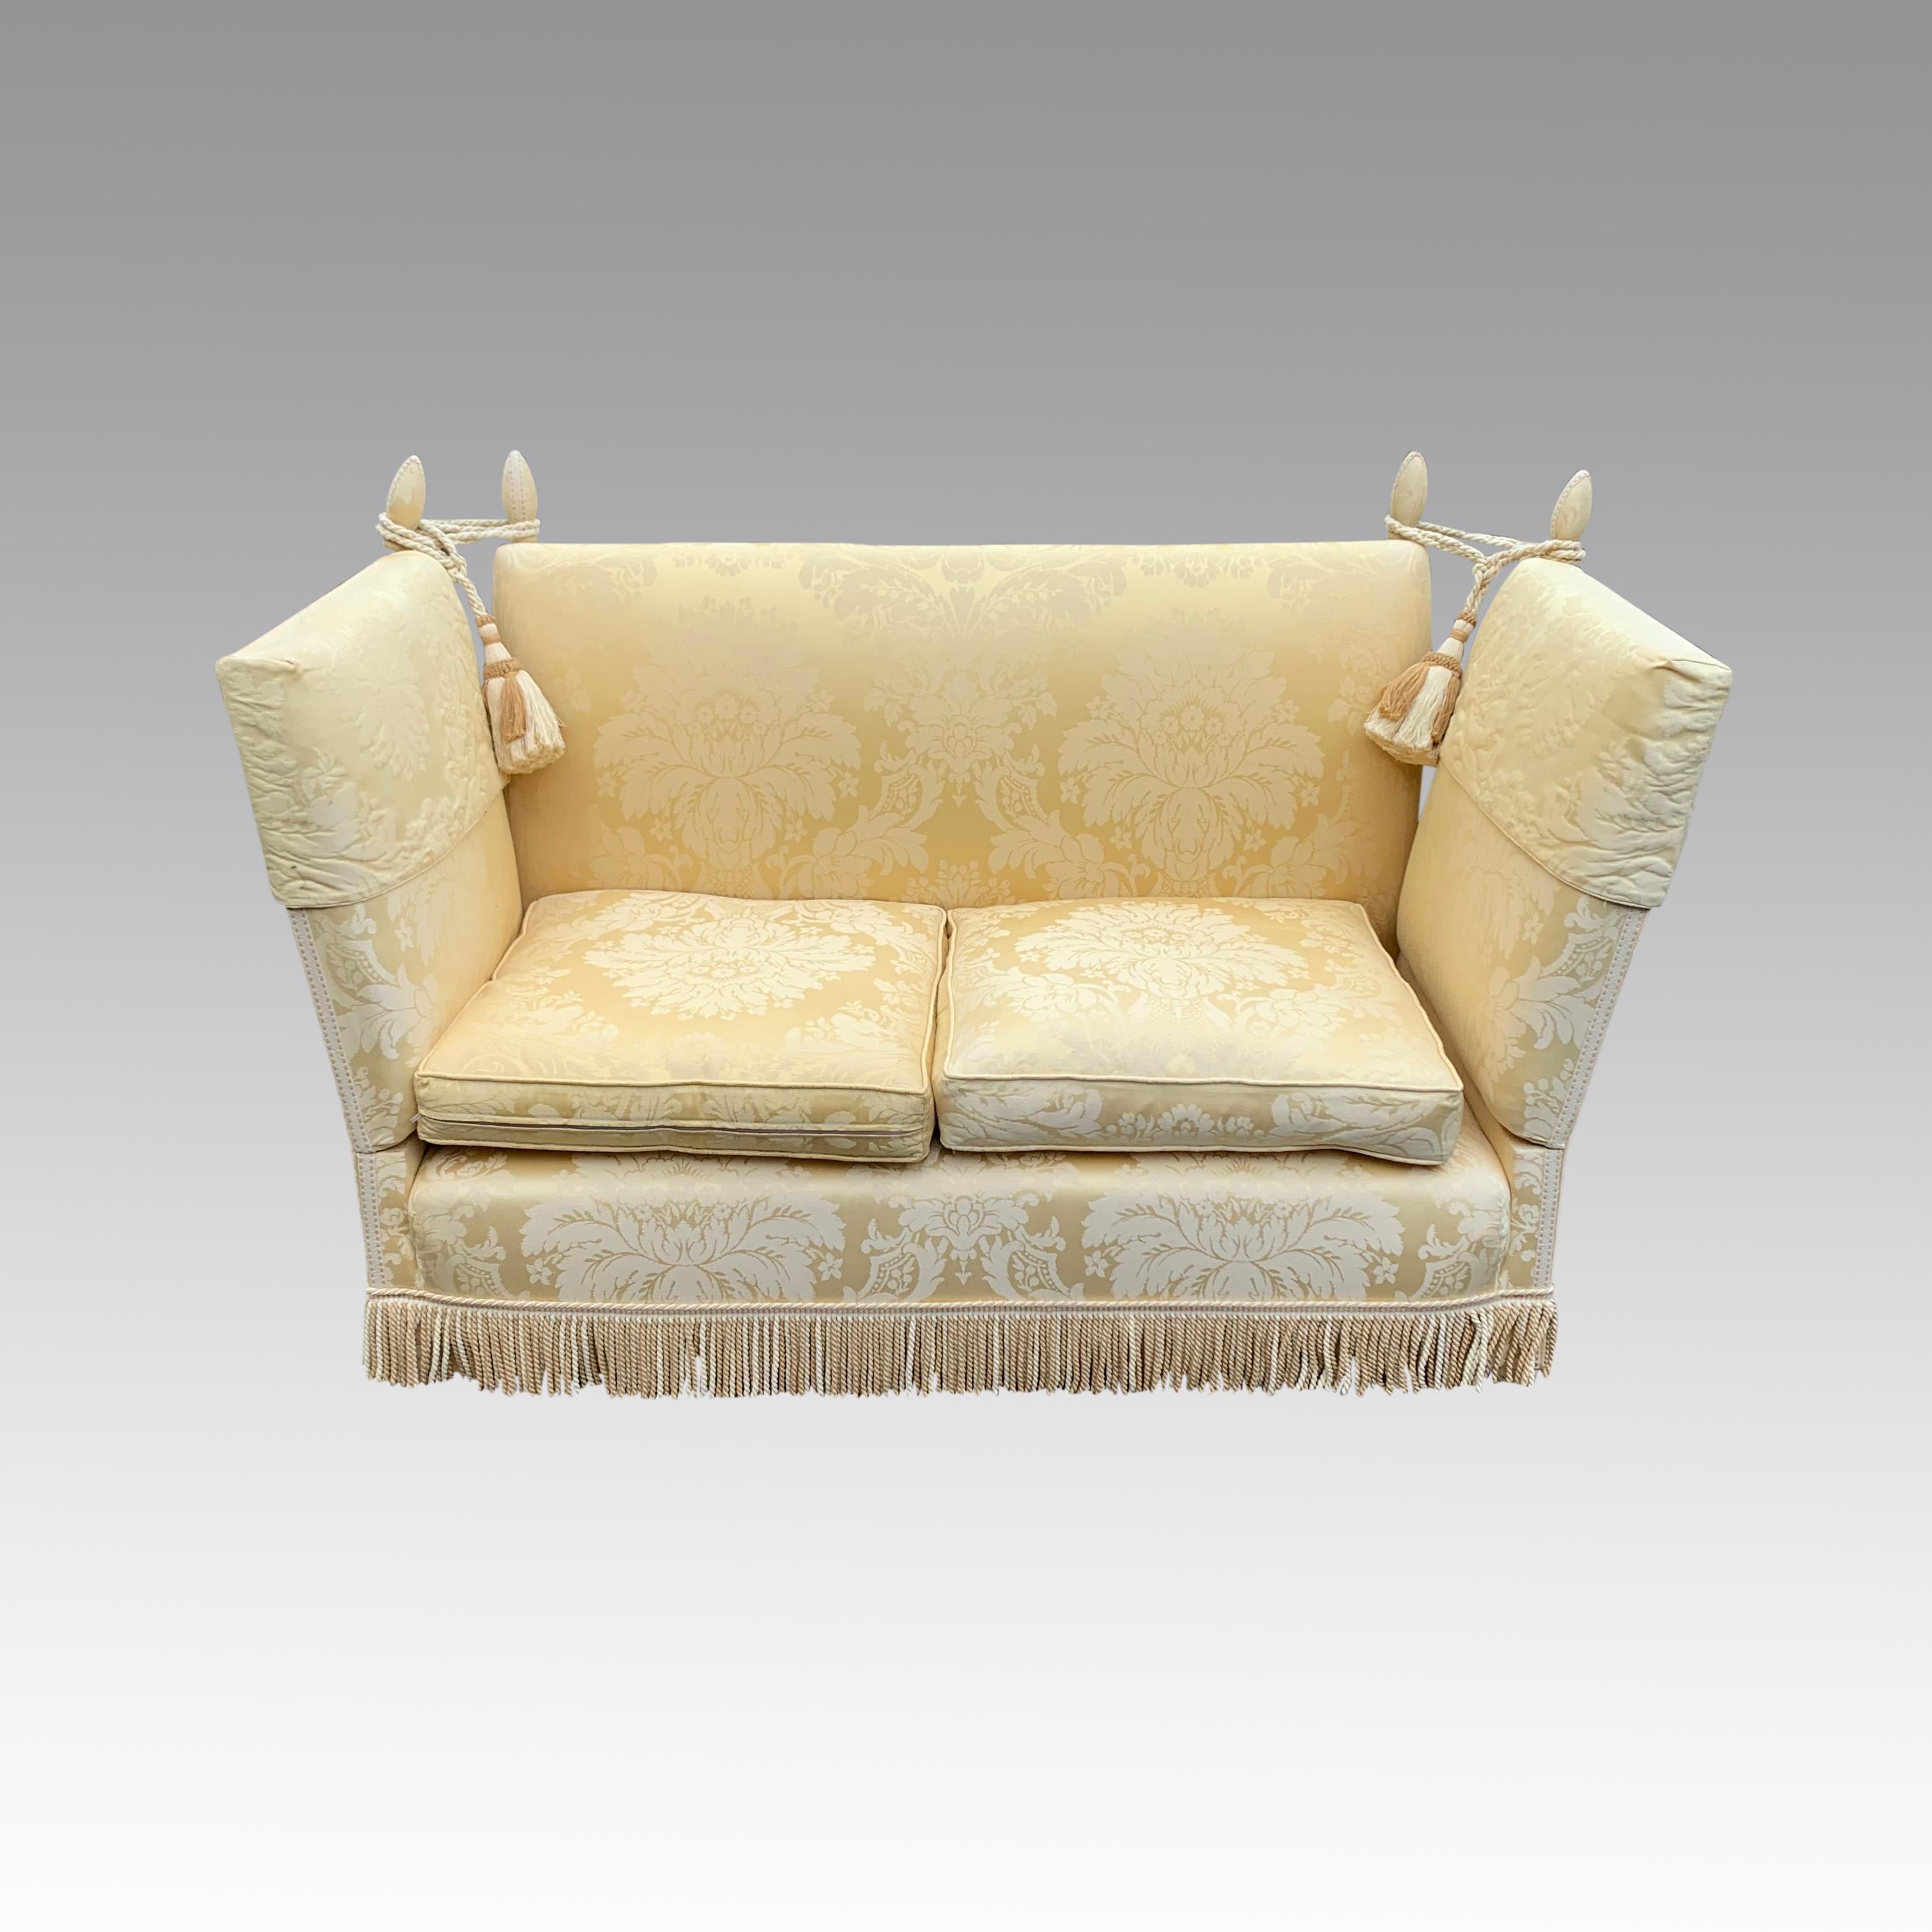 Ein wunderschönes Knole Sofa aus dem frühen 20. Jahrhundert im traditionellen Stil, handgefertigt mit einem vollständig gegliederten originalen Holzrahmen. Vor etwa 8 Jahren mit einem hochwertigen goldfarbenen Damast gepolstert, aber in